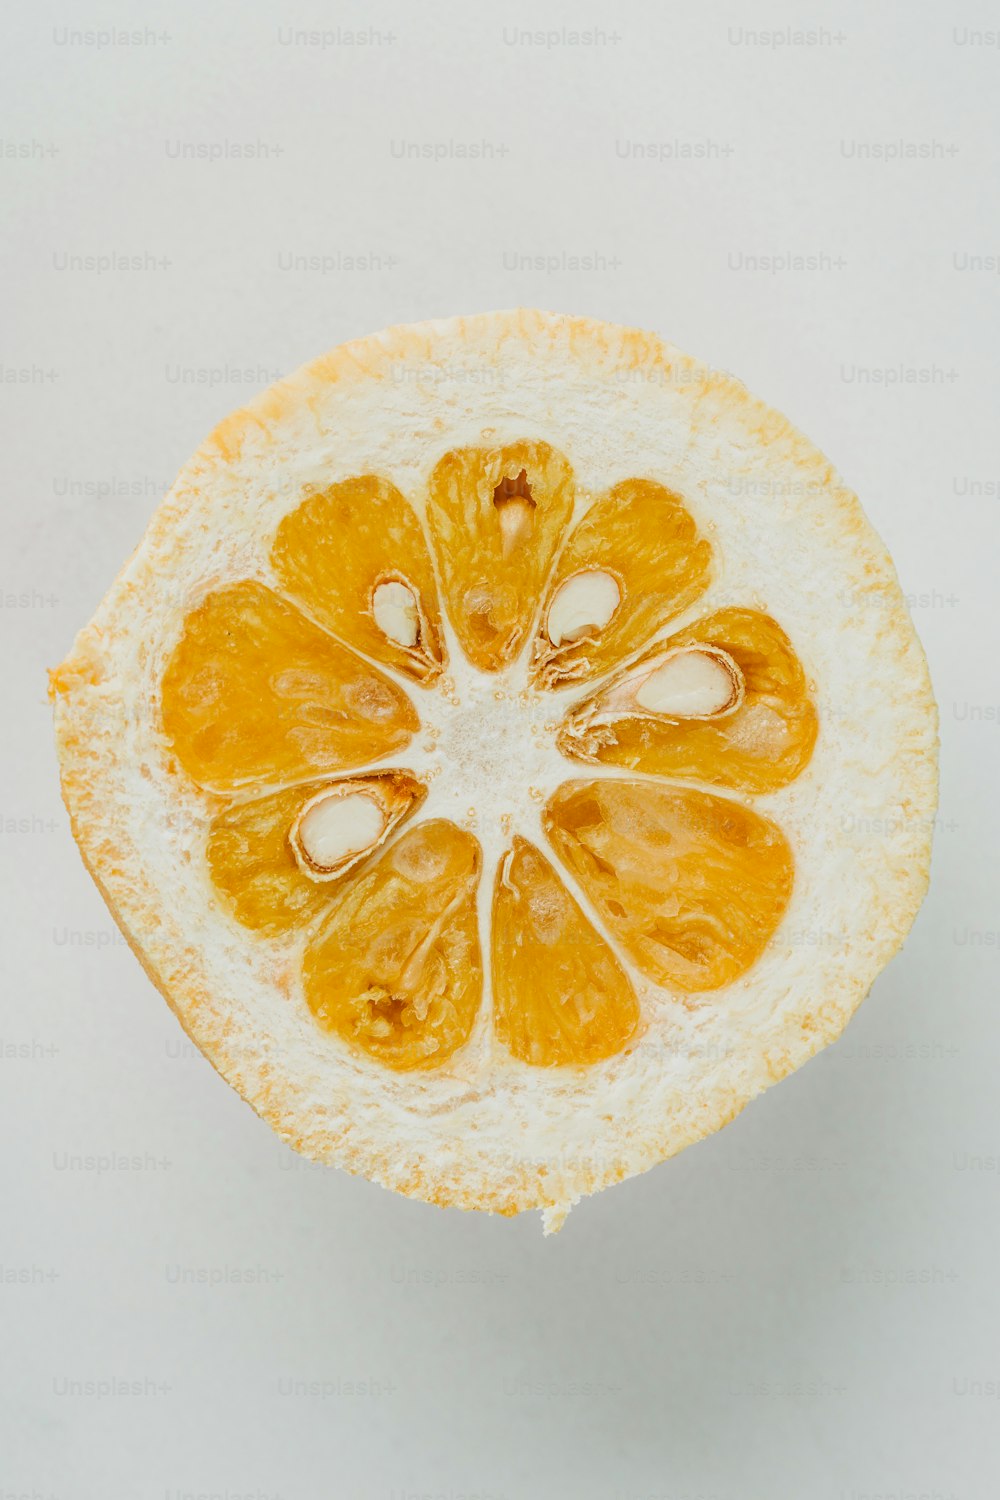 ein oranger Schnitt in zwei Hälften auf einer weißen Oberfläche